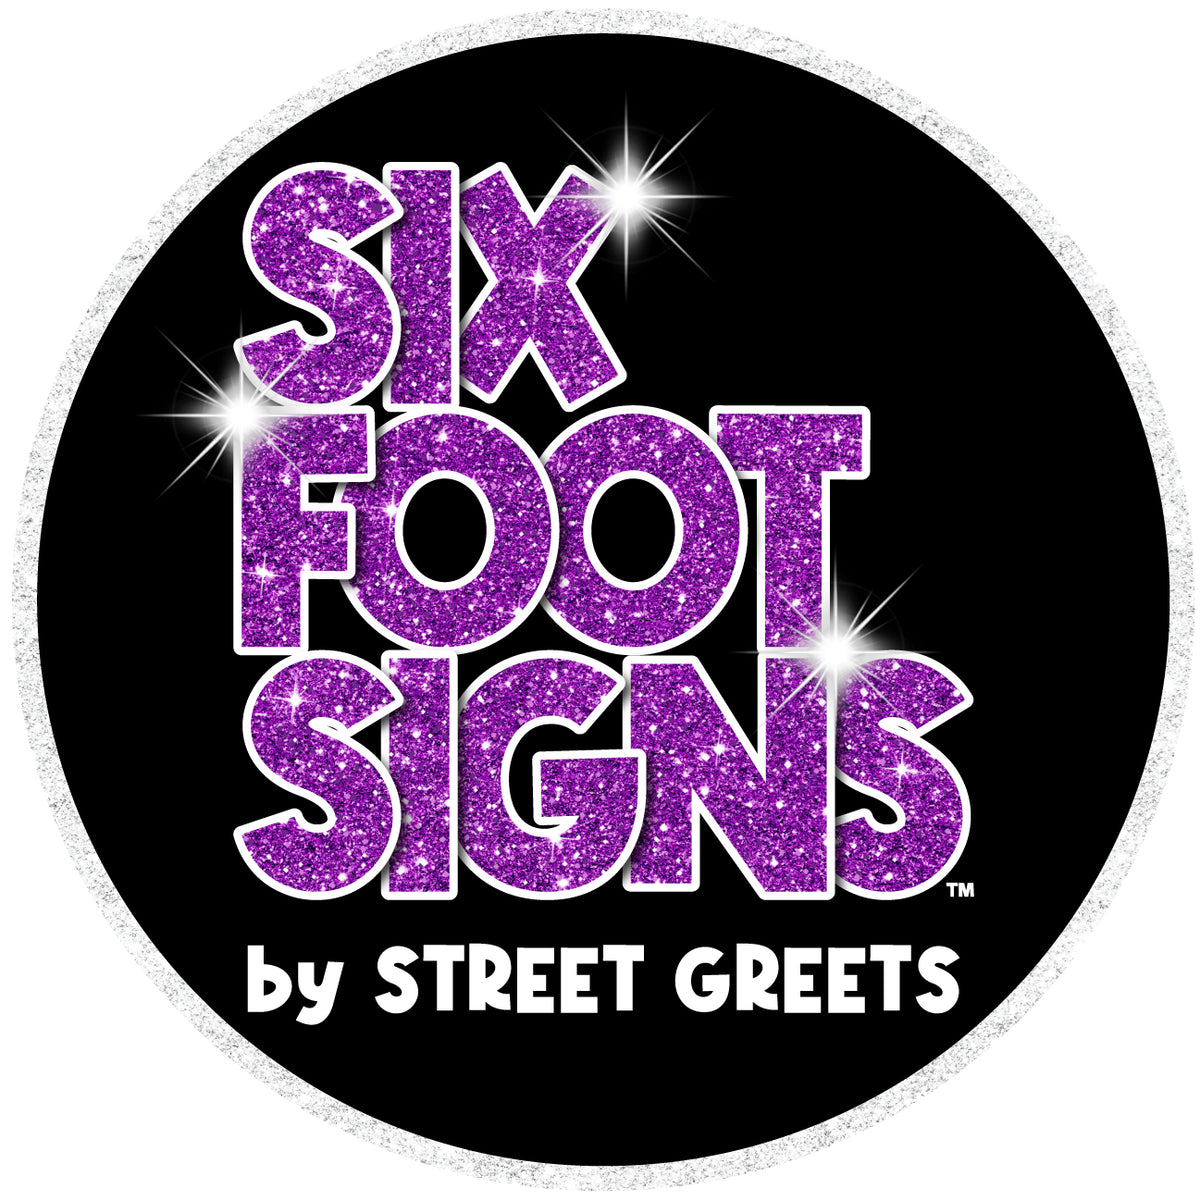 Street Greet's Braces - 4 Pack of 6 Foot Braces